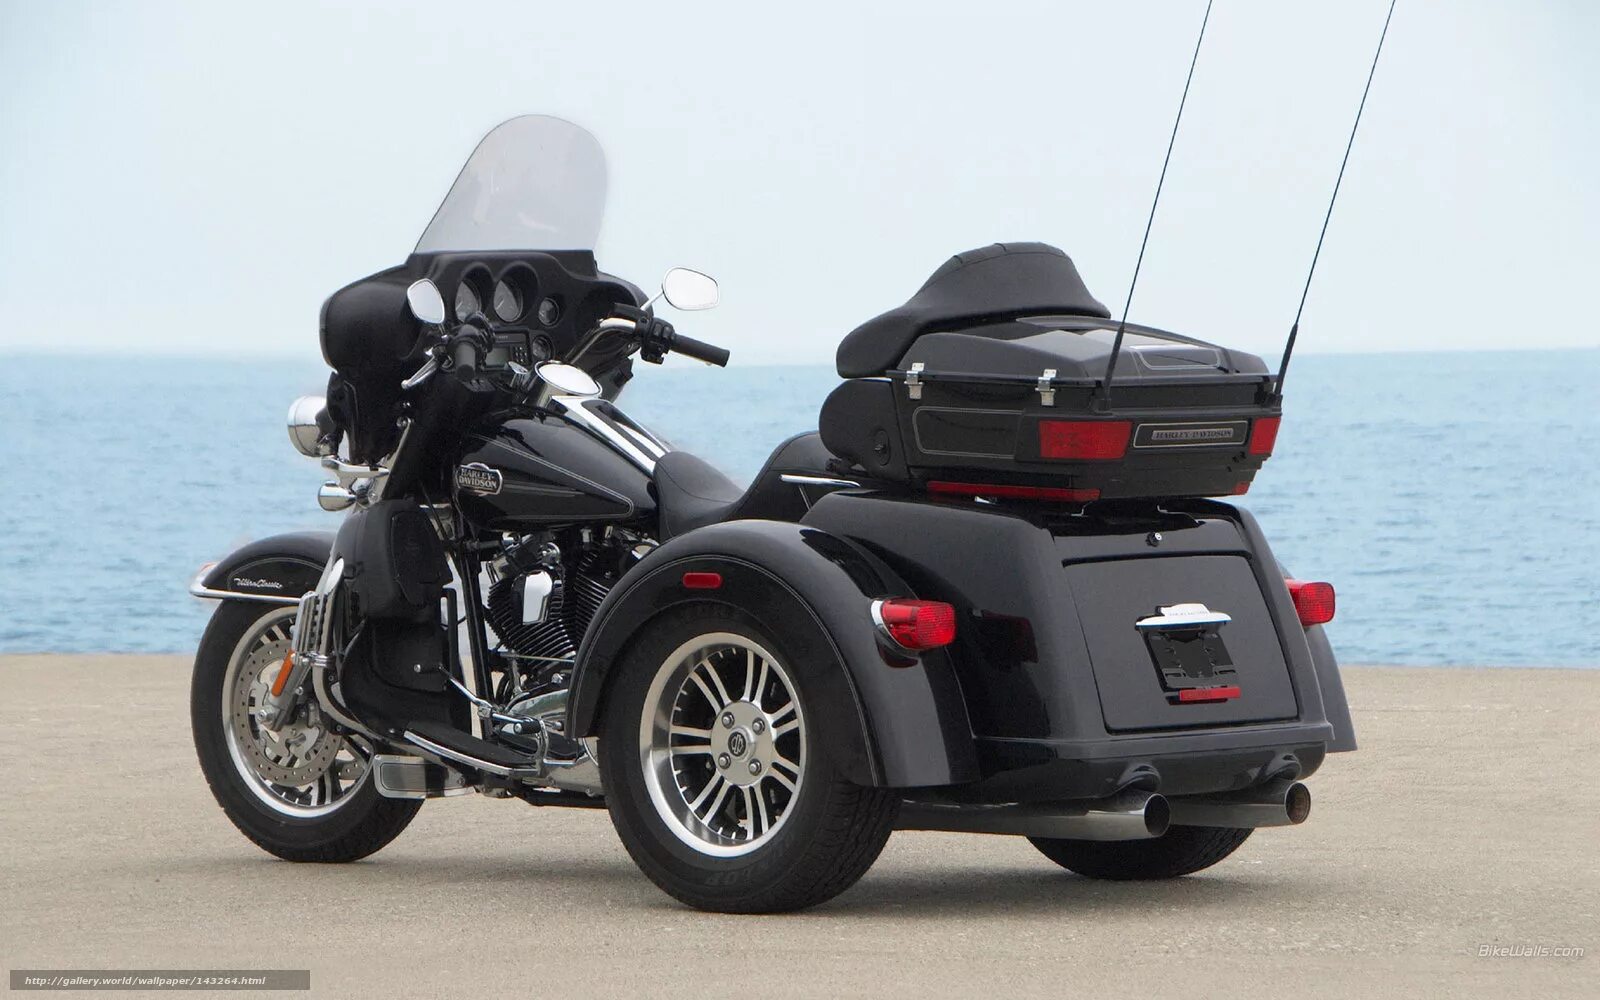 Трехколесный мотоцикл купить. Мотоцикл Харлей Дэвидсон 3 колесный. Харлей Дэвидсон трехколесный. Harley Davidson tri Glide Ultra. Трёхколёсный мотоцикл Harley Davidson.